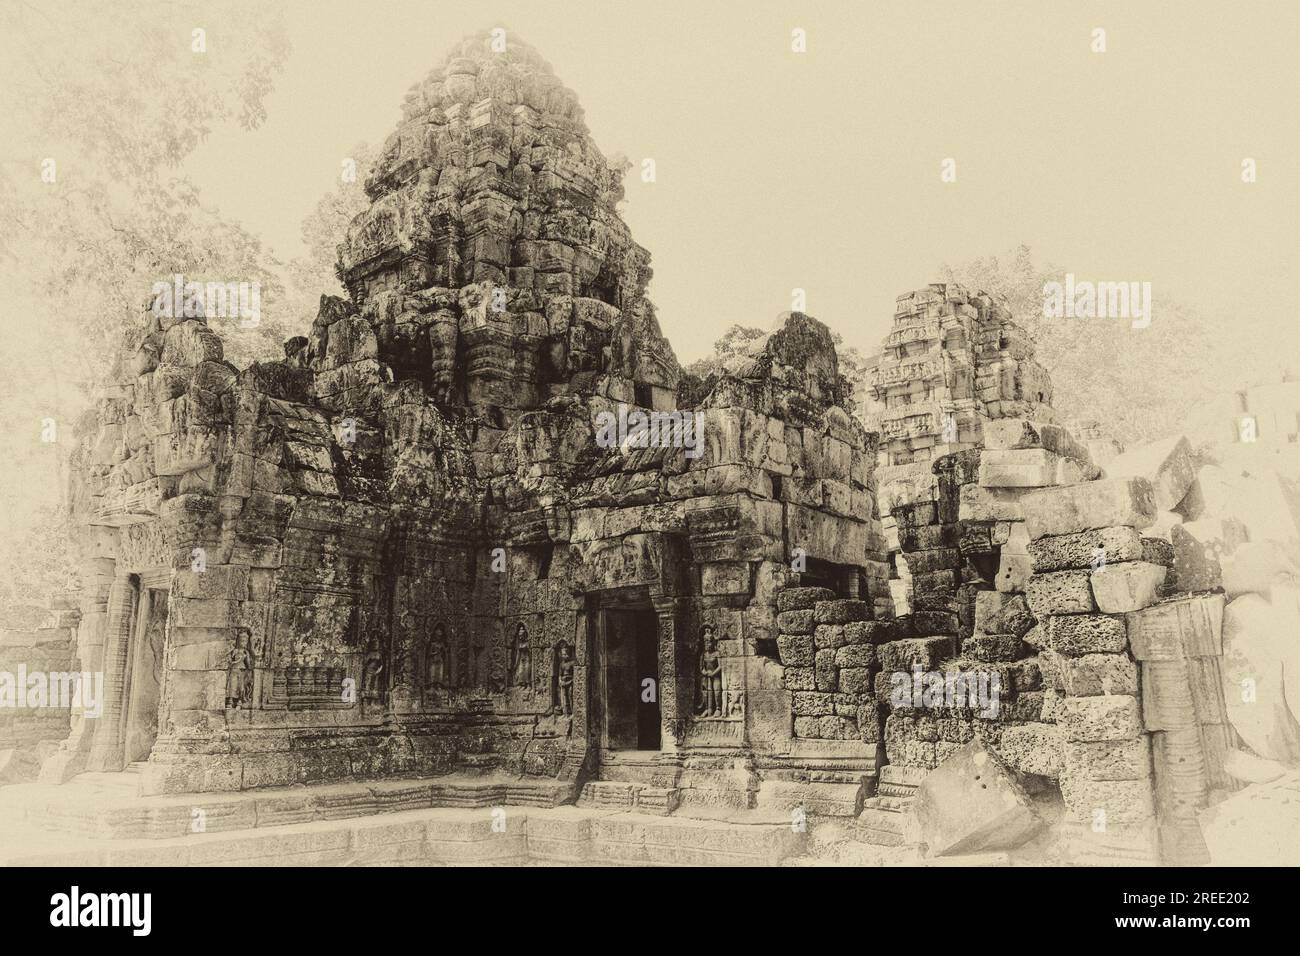 TA Som ist ein kleiner Tempel in Angkor, Kambodscha, erbaut am Ende des 12. Jahrhunderts für König Jayavarman VII Schwarz-Weiß, Filmkörnung. Stockfoto